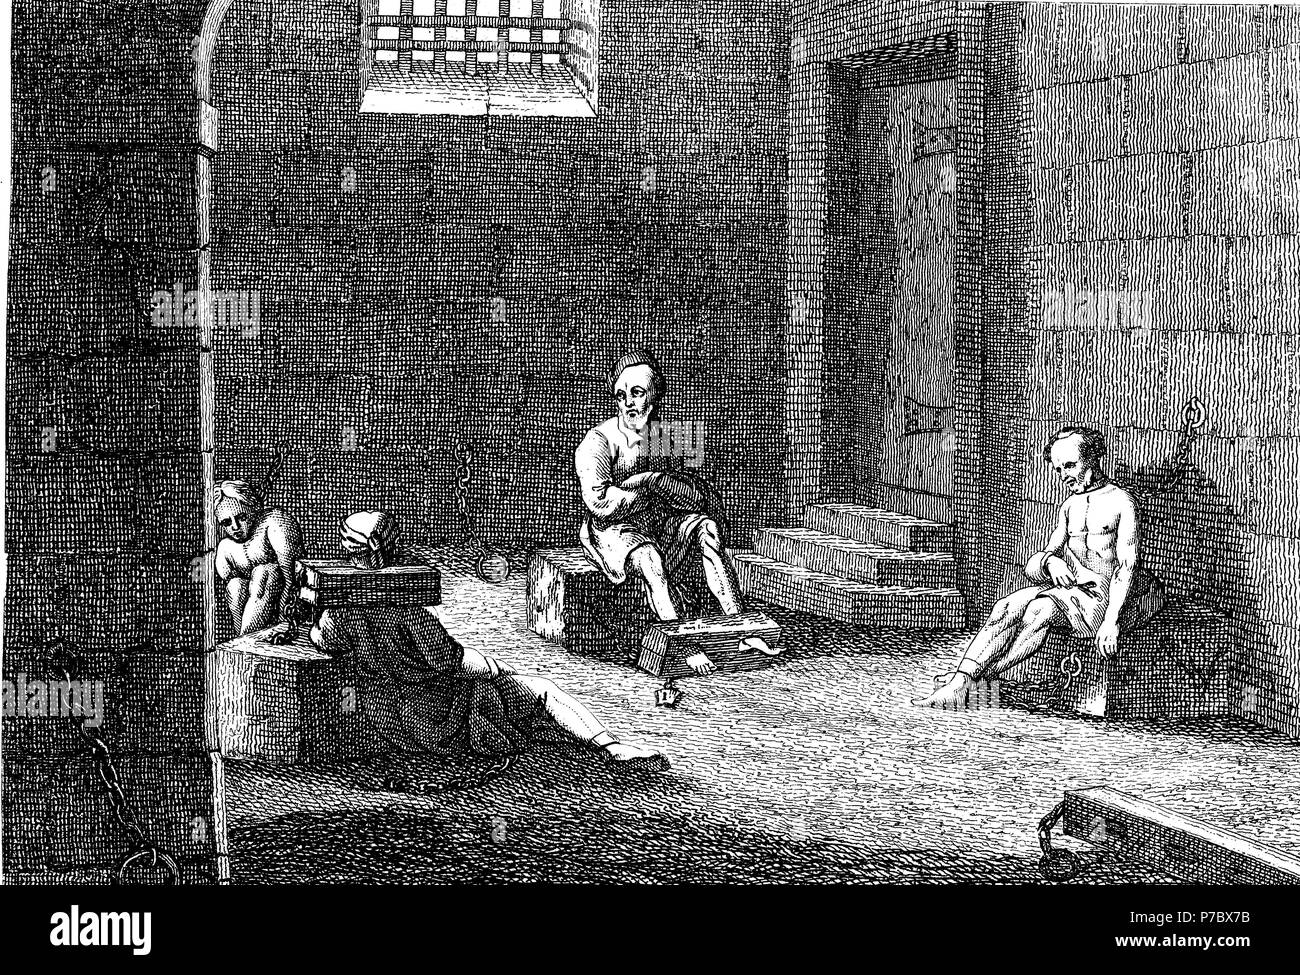 Historia sagrada. Presos encarcelados con grilletes. Grabado de 1862. Stock Photo